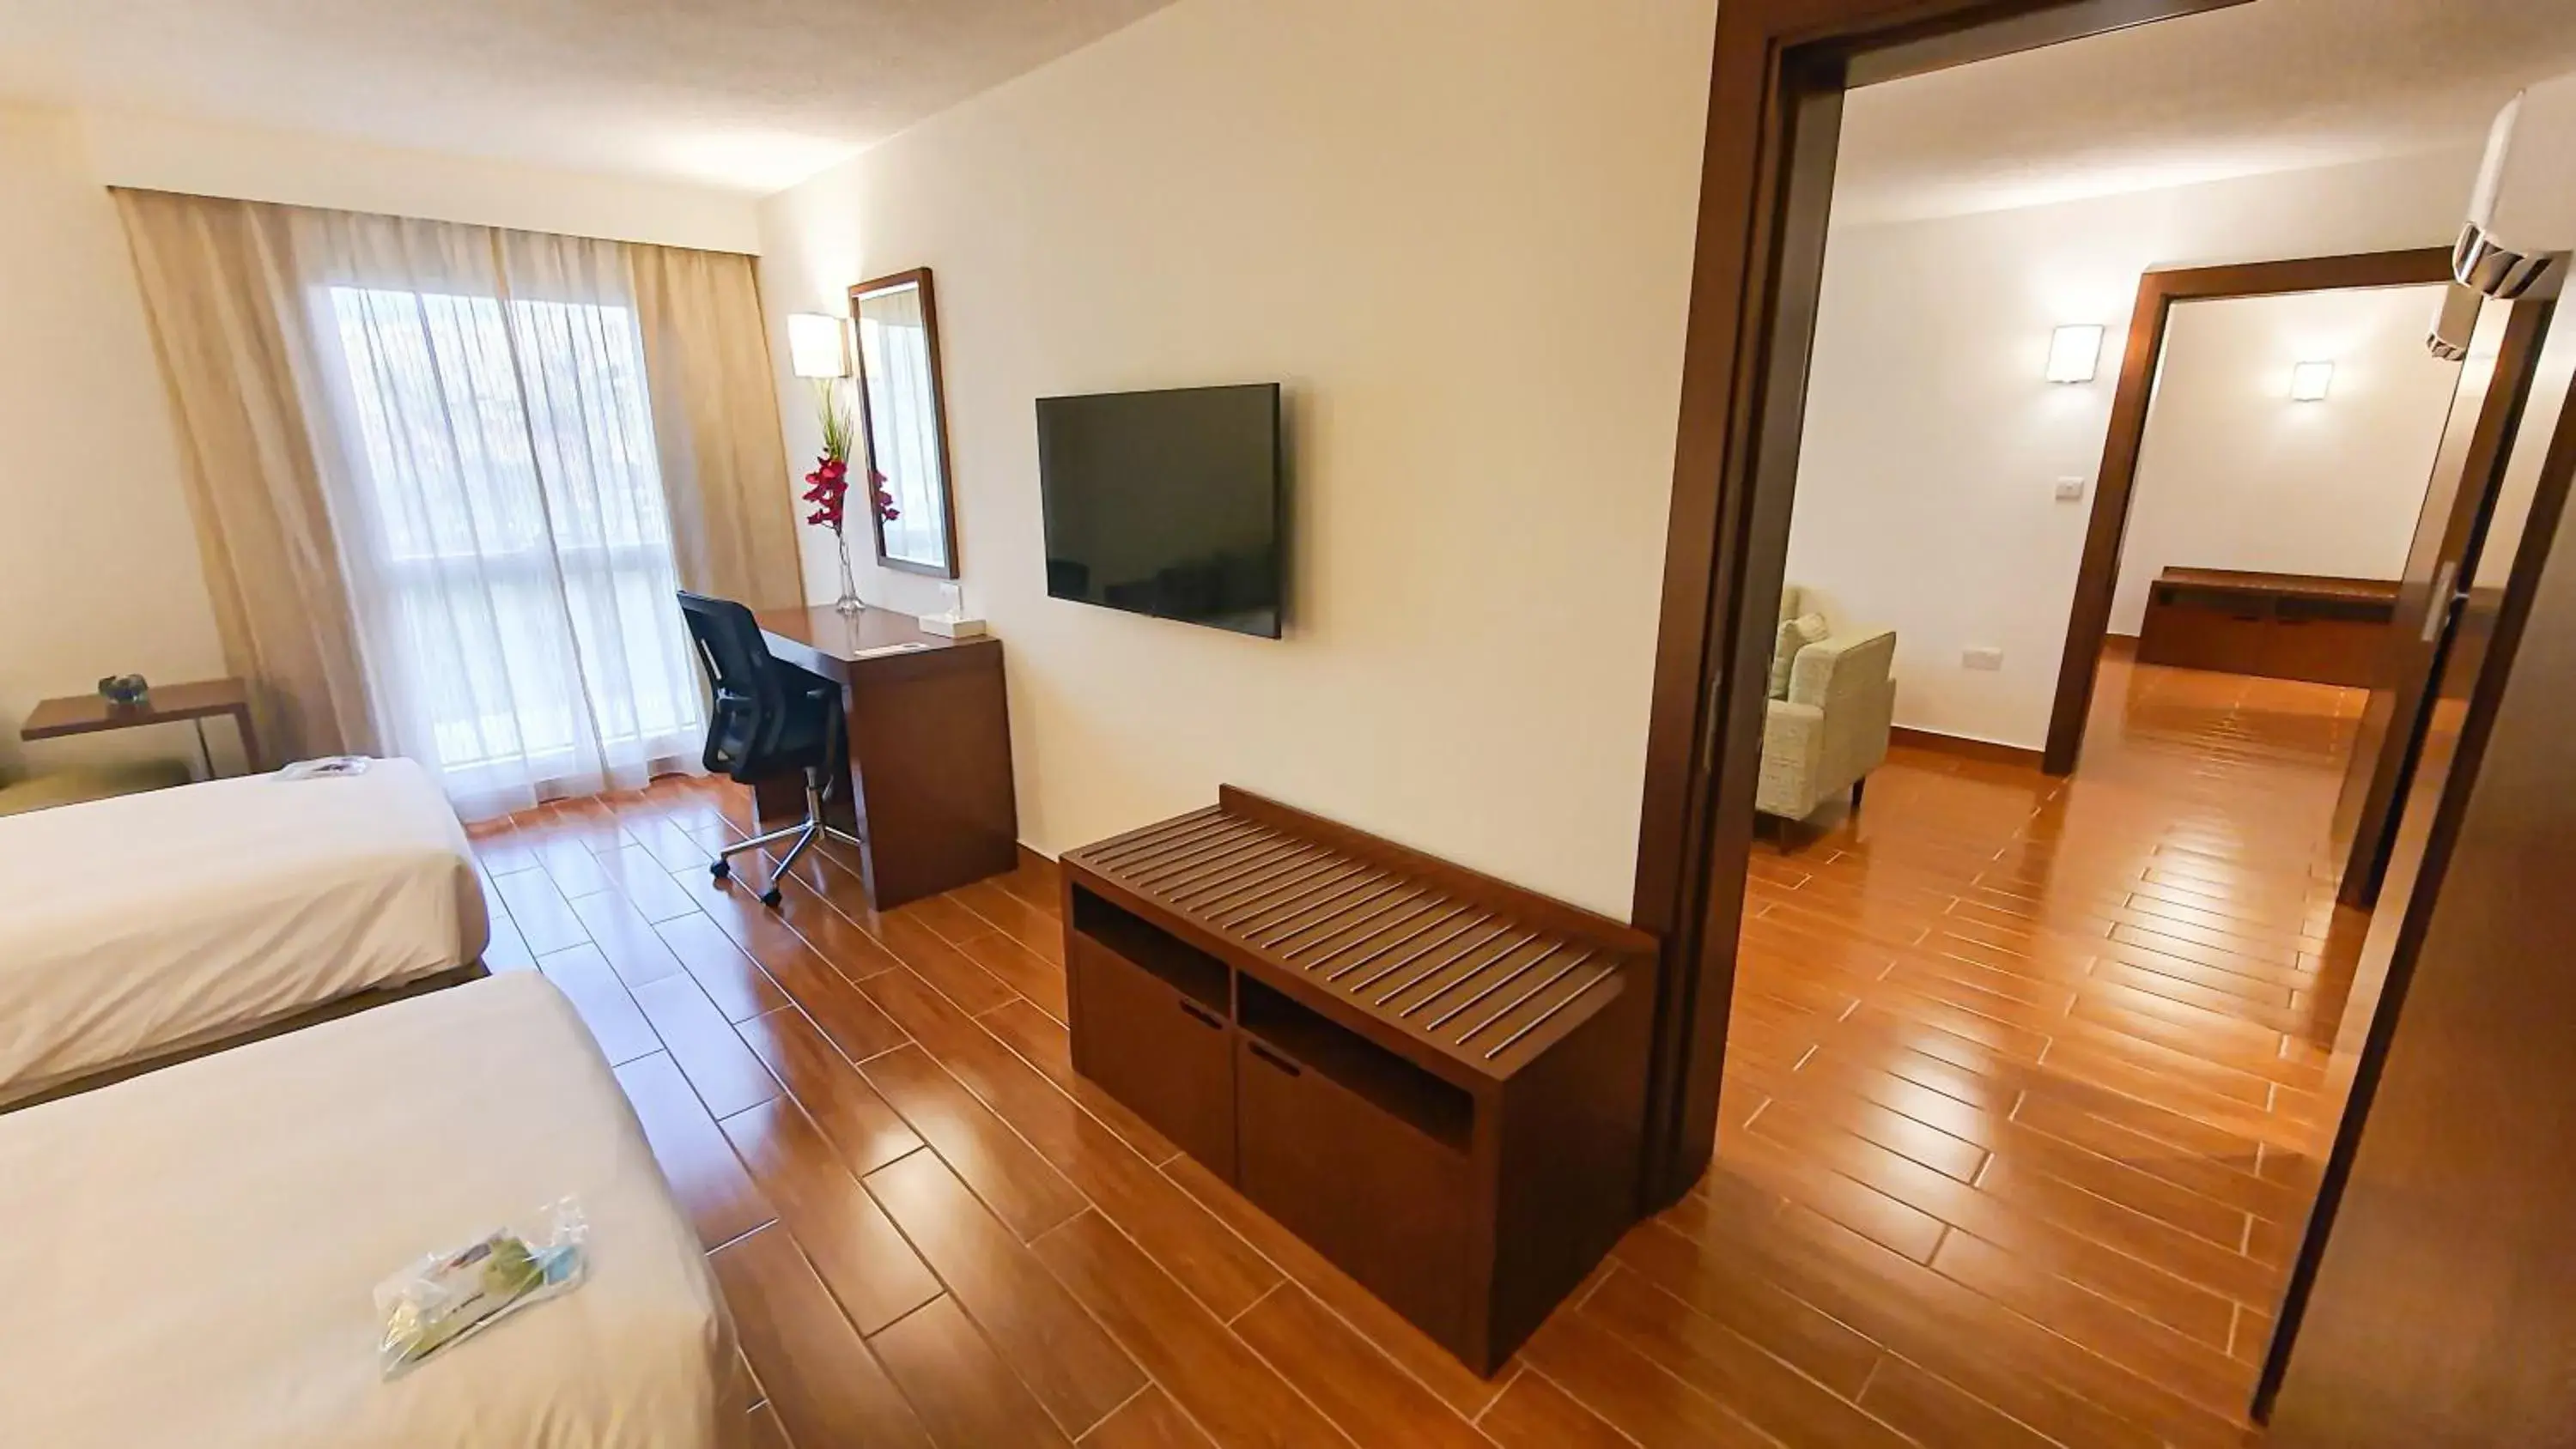 Bedroom, TV/Entertainment Center in Dhafra Beach Hotel